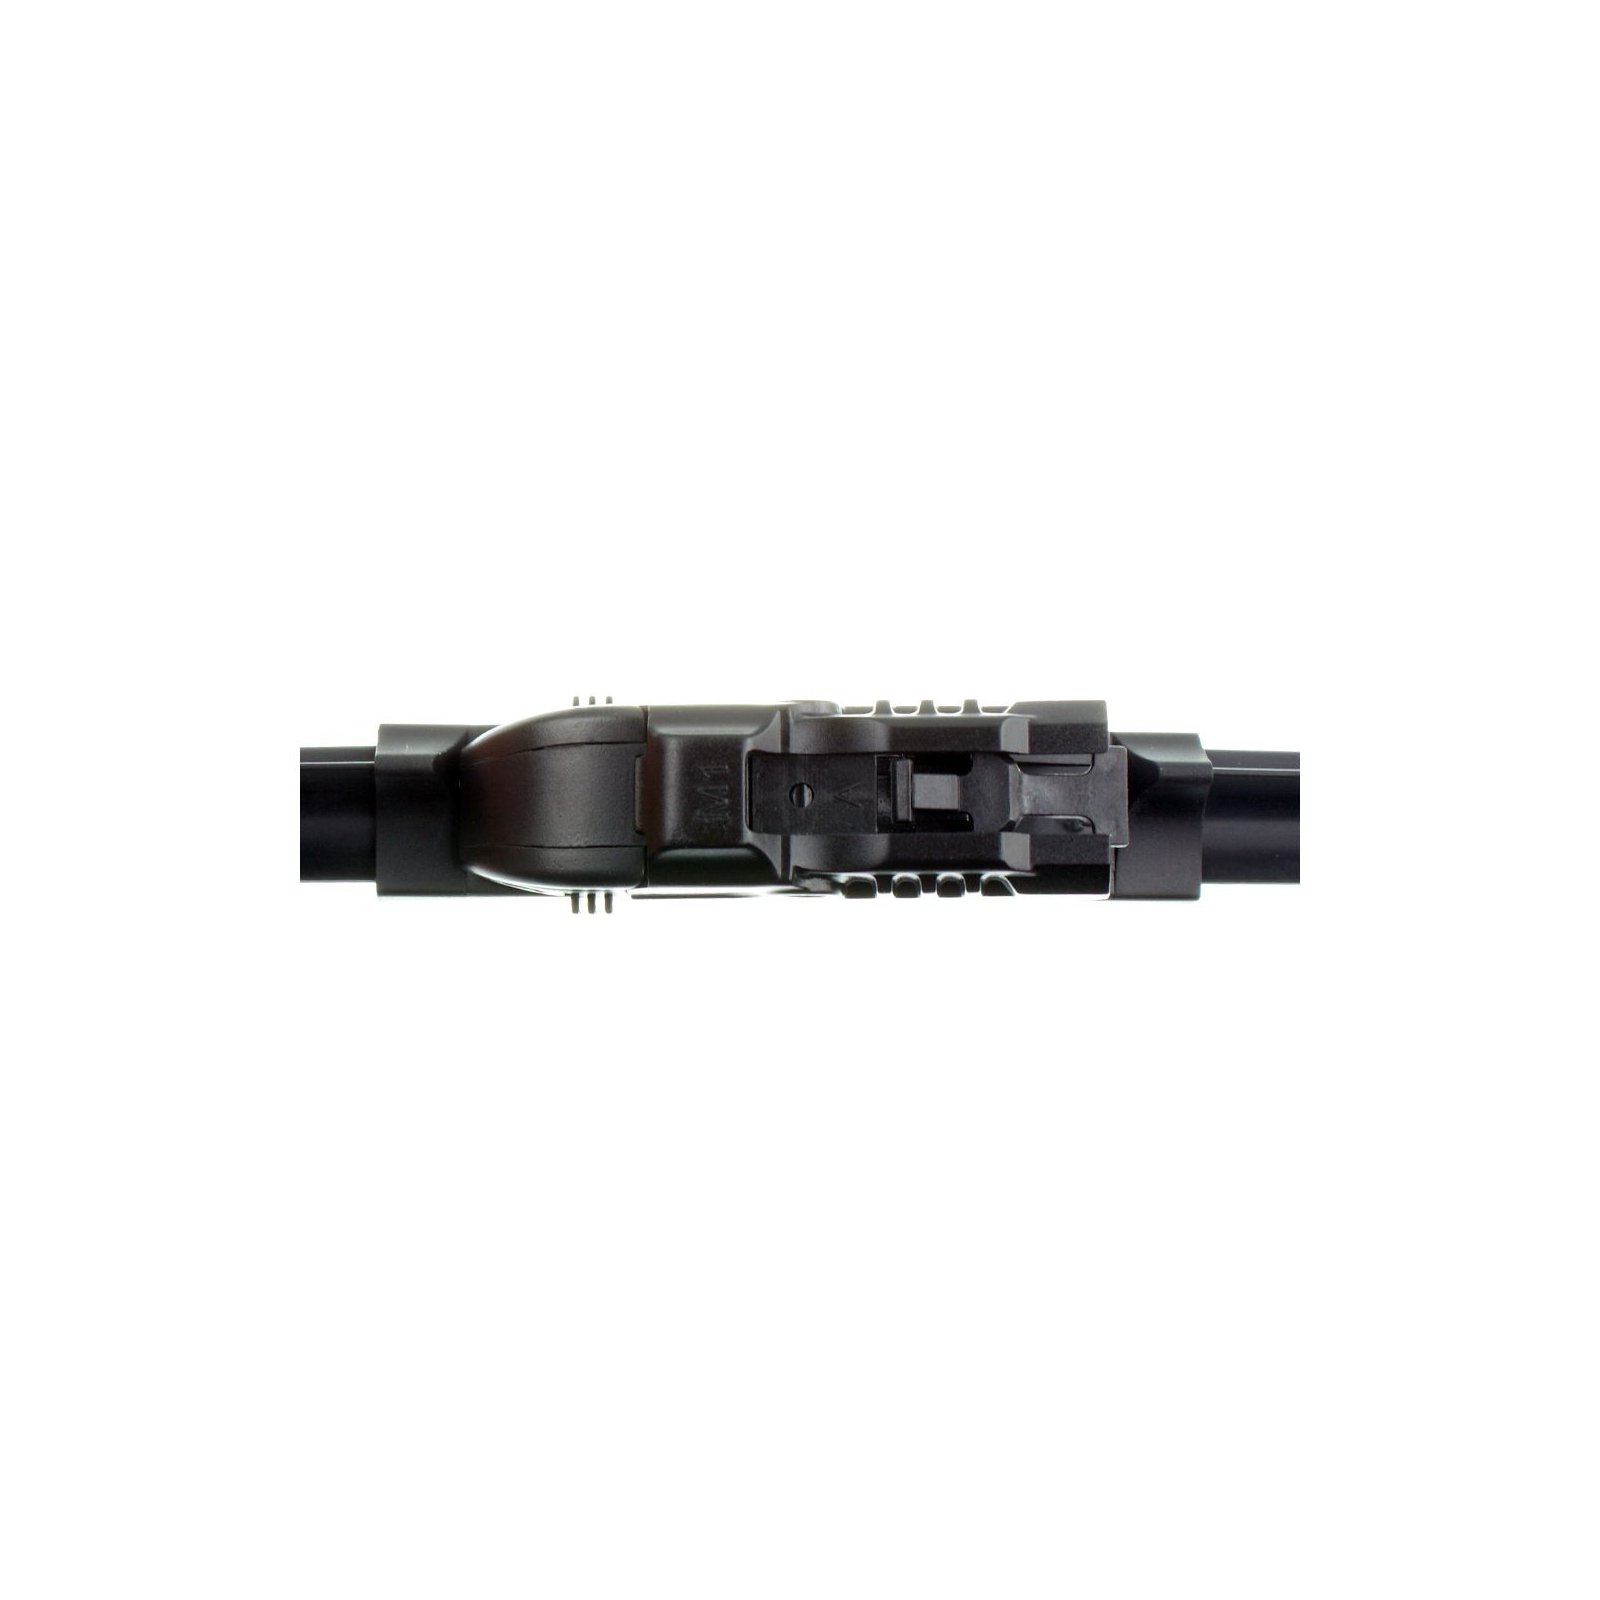 Щетка стеклоочистителя Sheron 525 мм Uni flat (000638) изображение 3